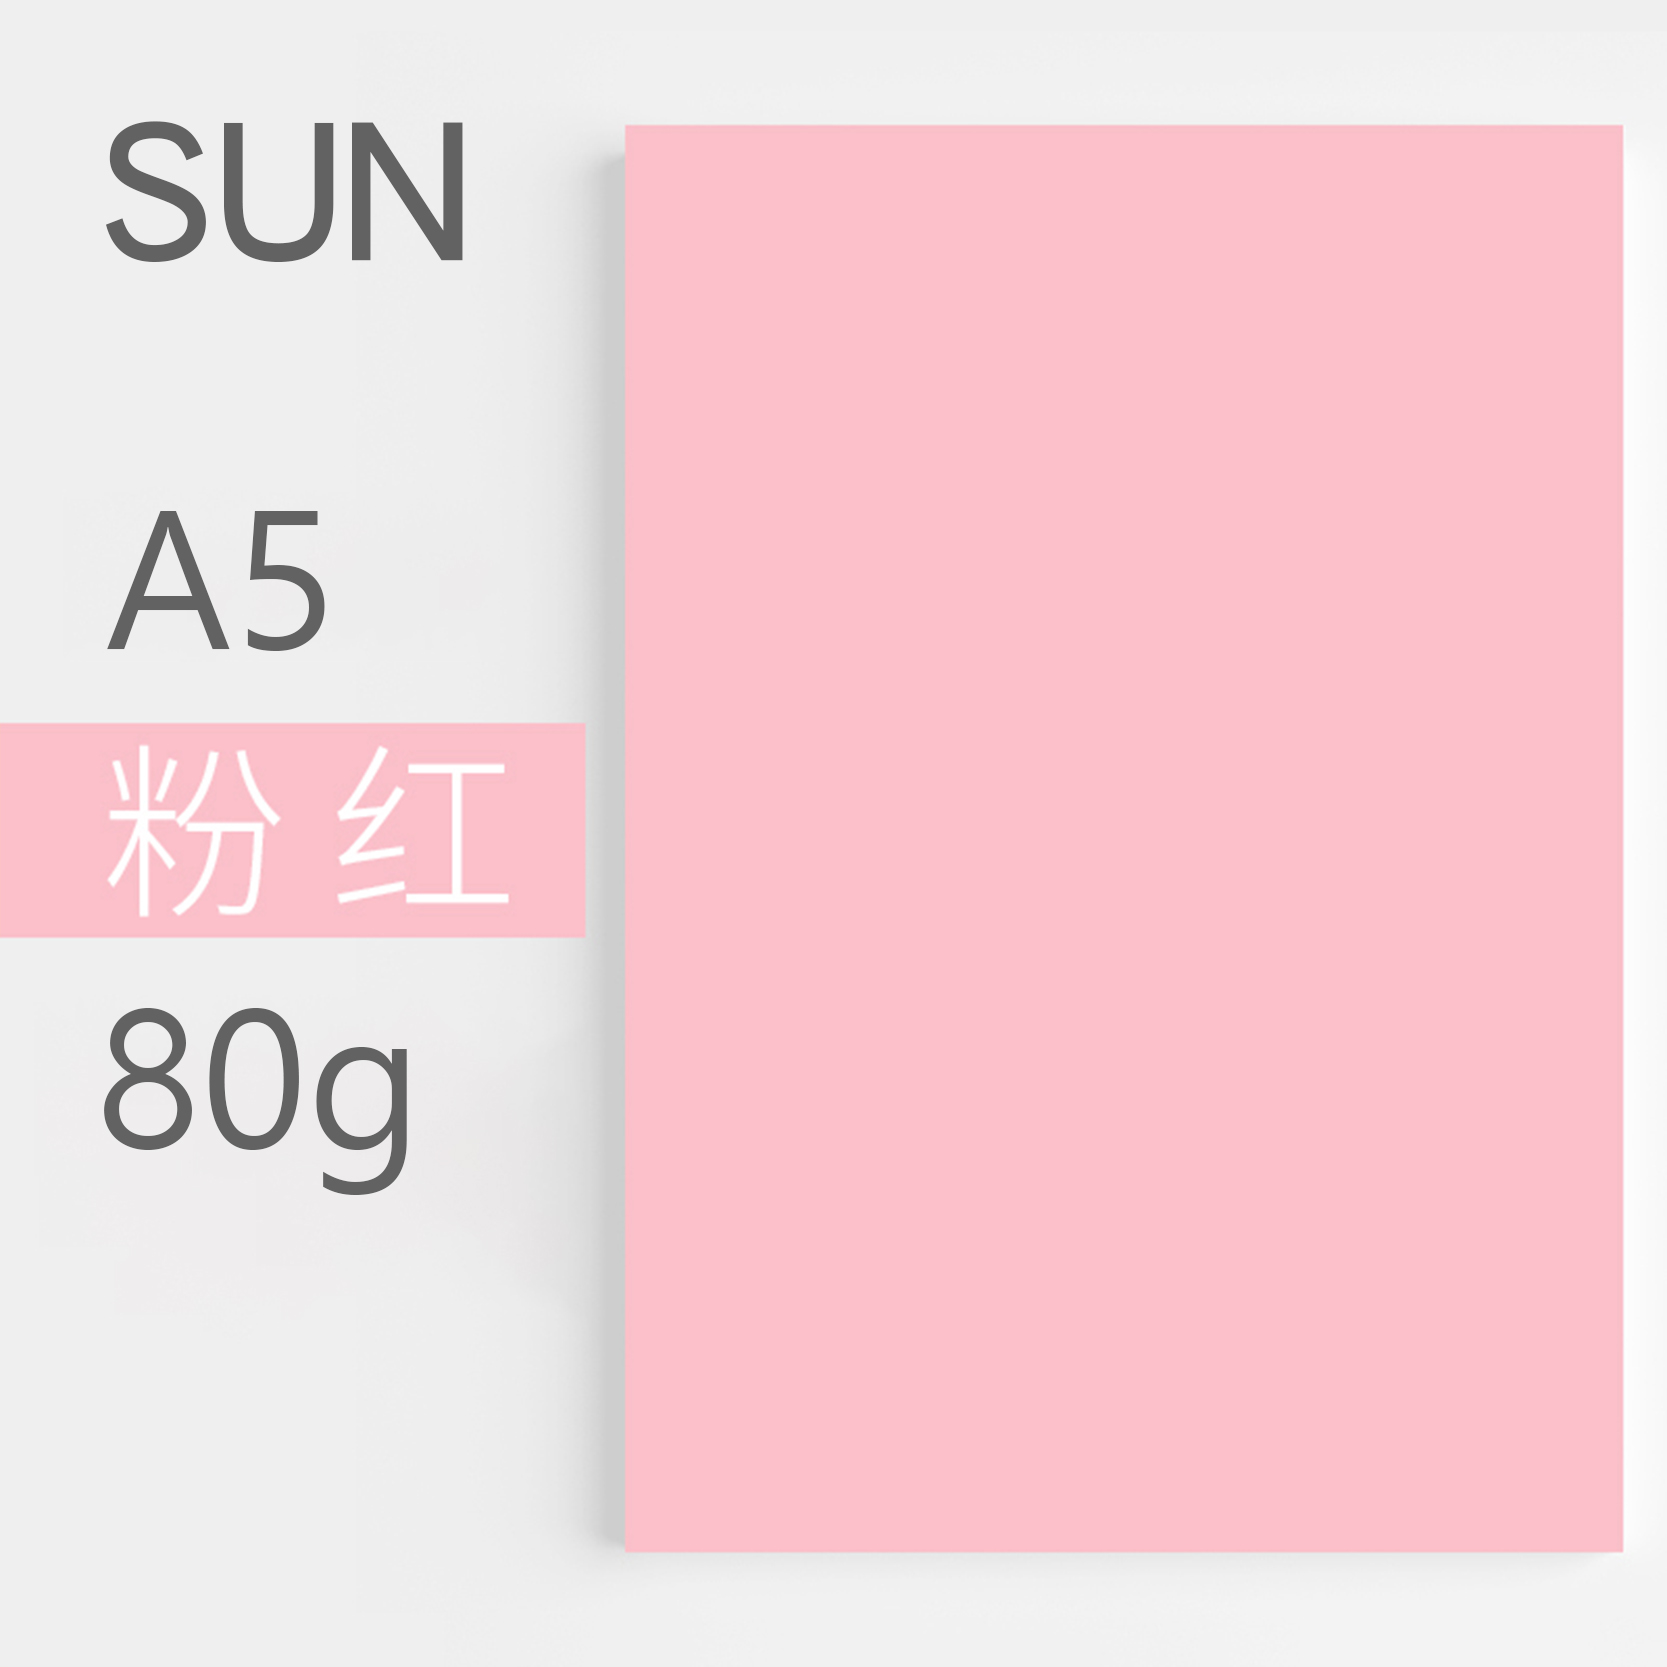 复印纸 Sun  80g A5 500张/包 10包 粉红色